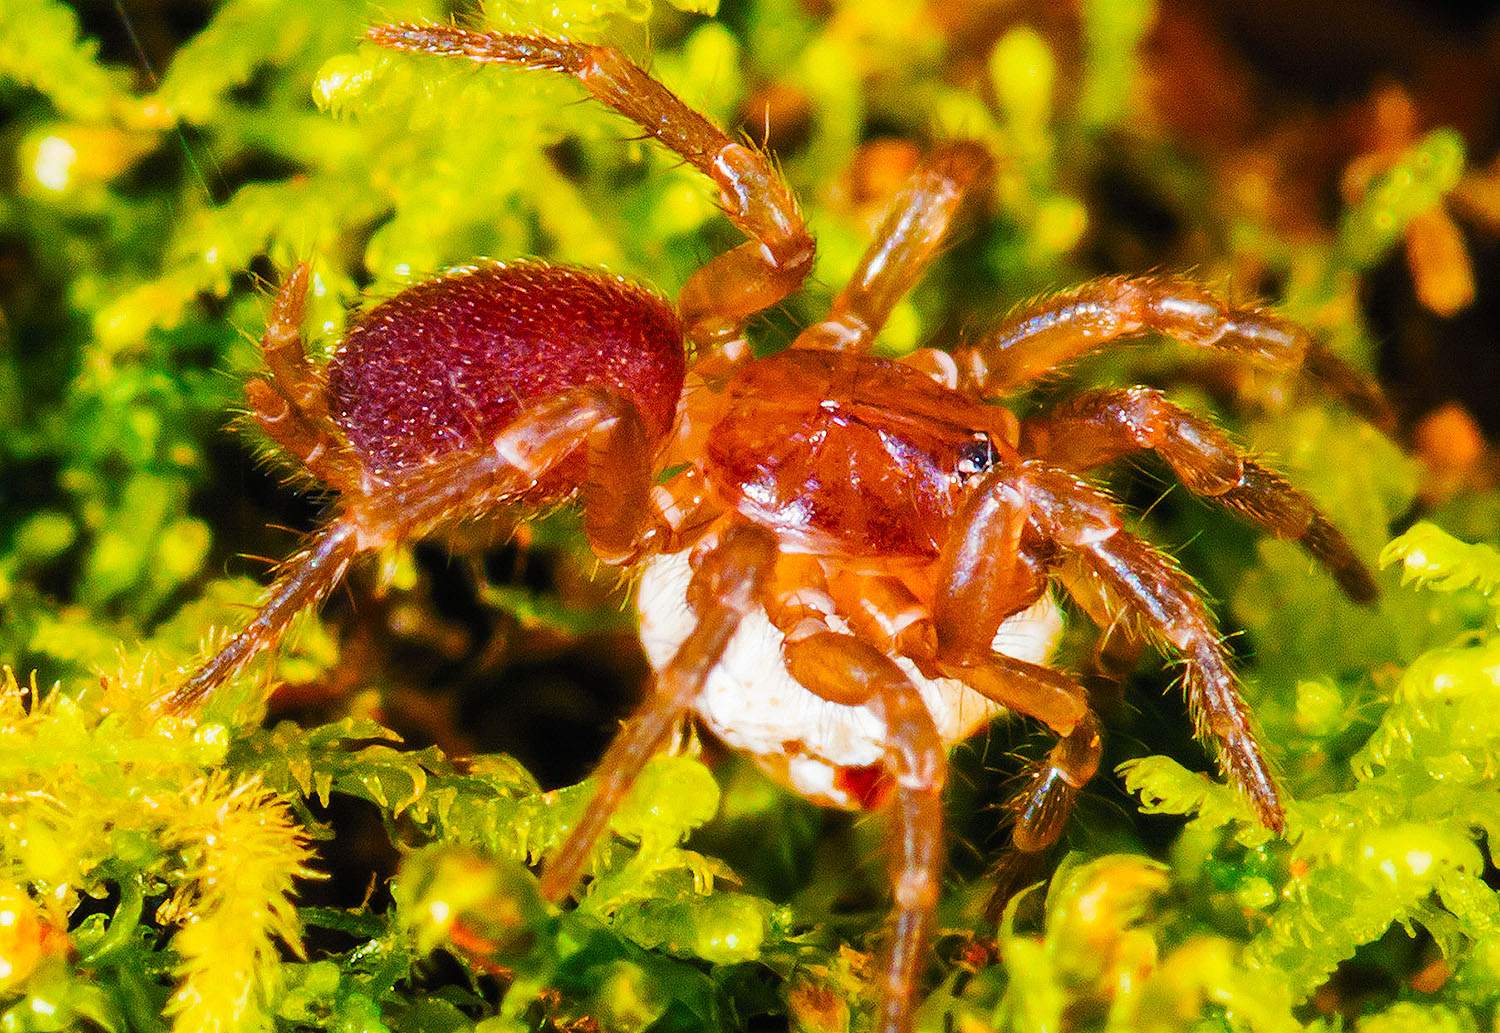 10-spruce-fir-moss-spider-facts